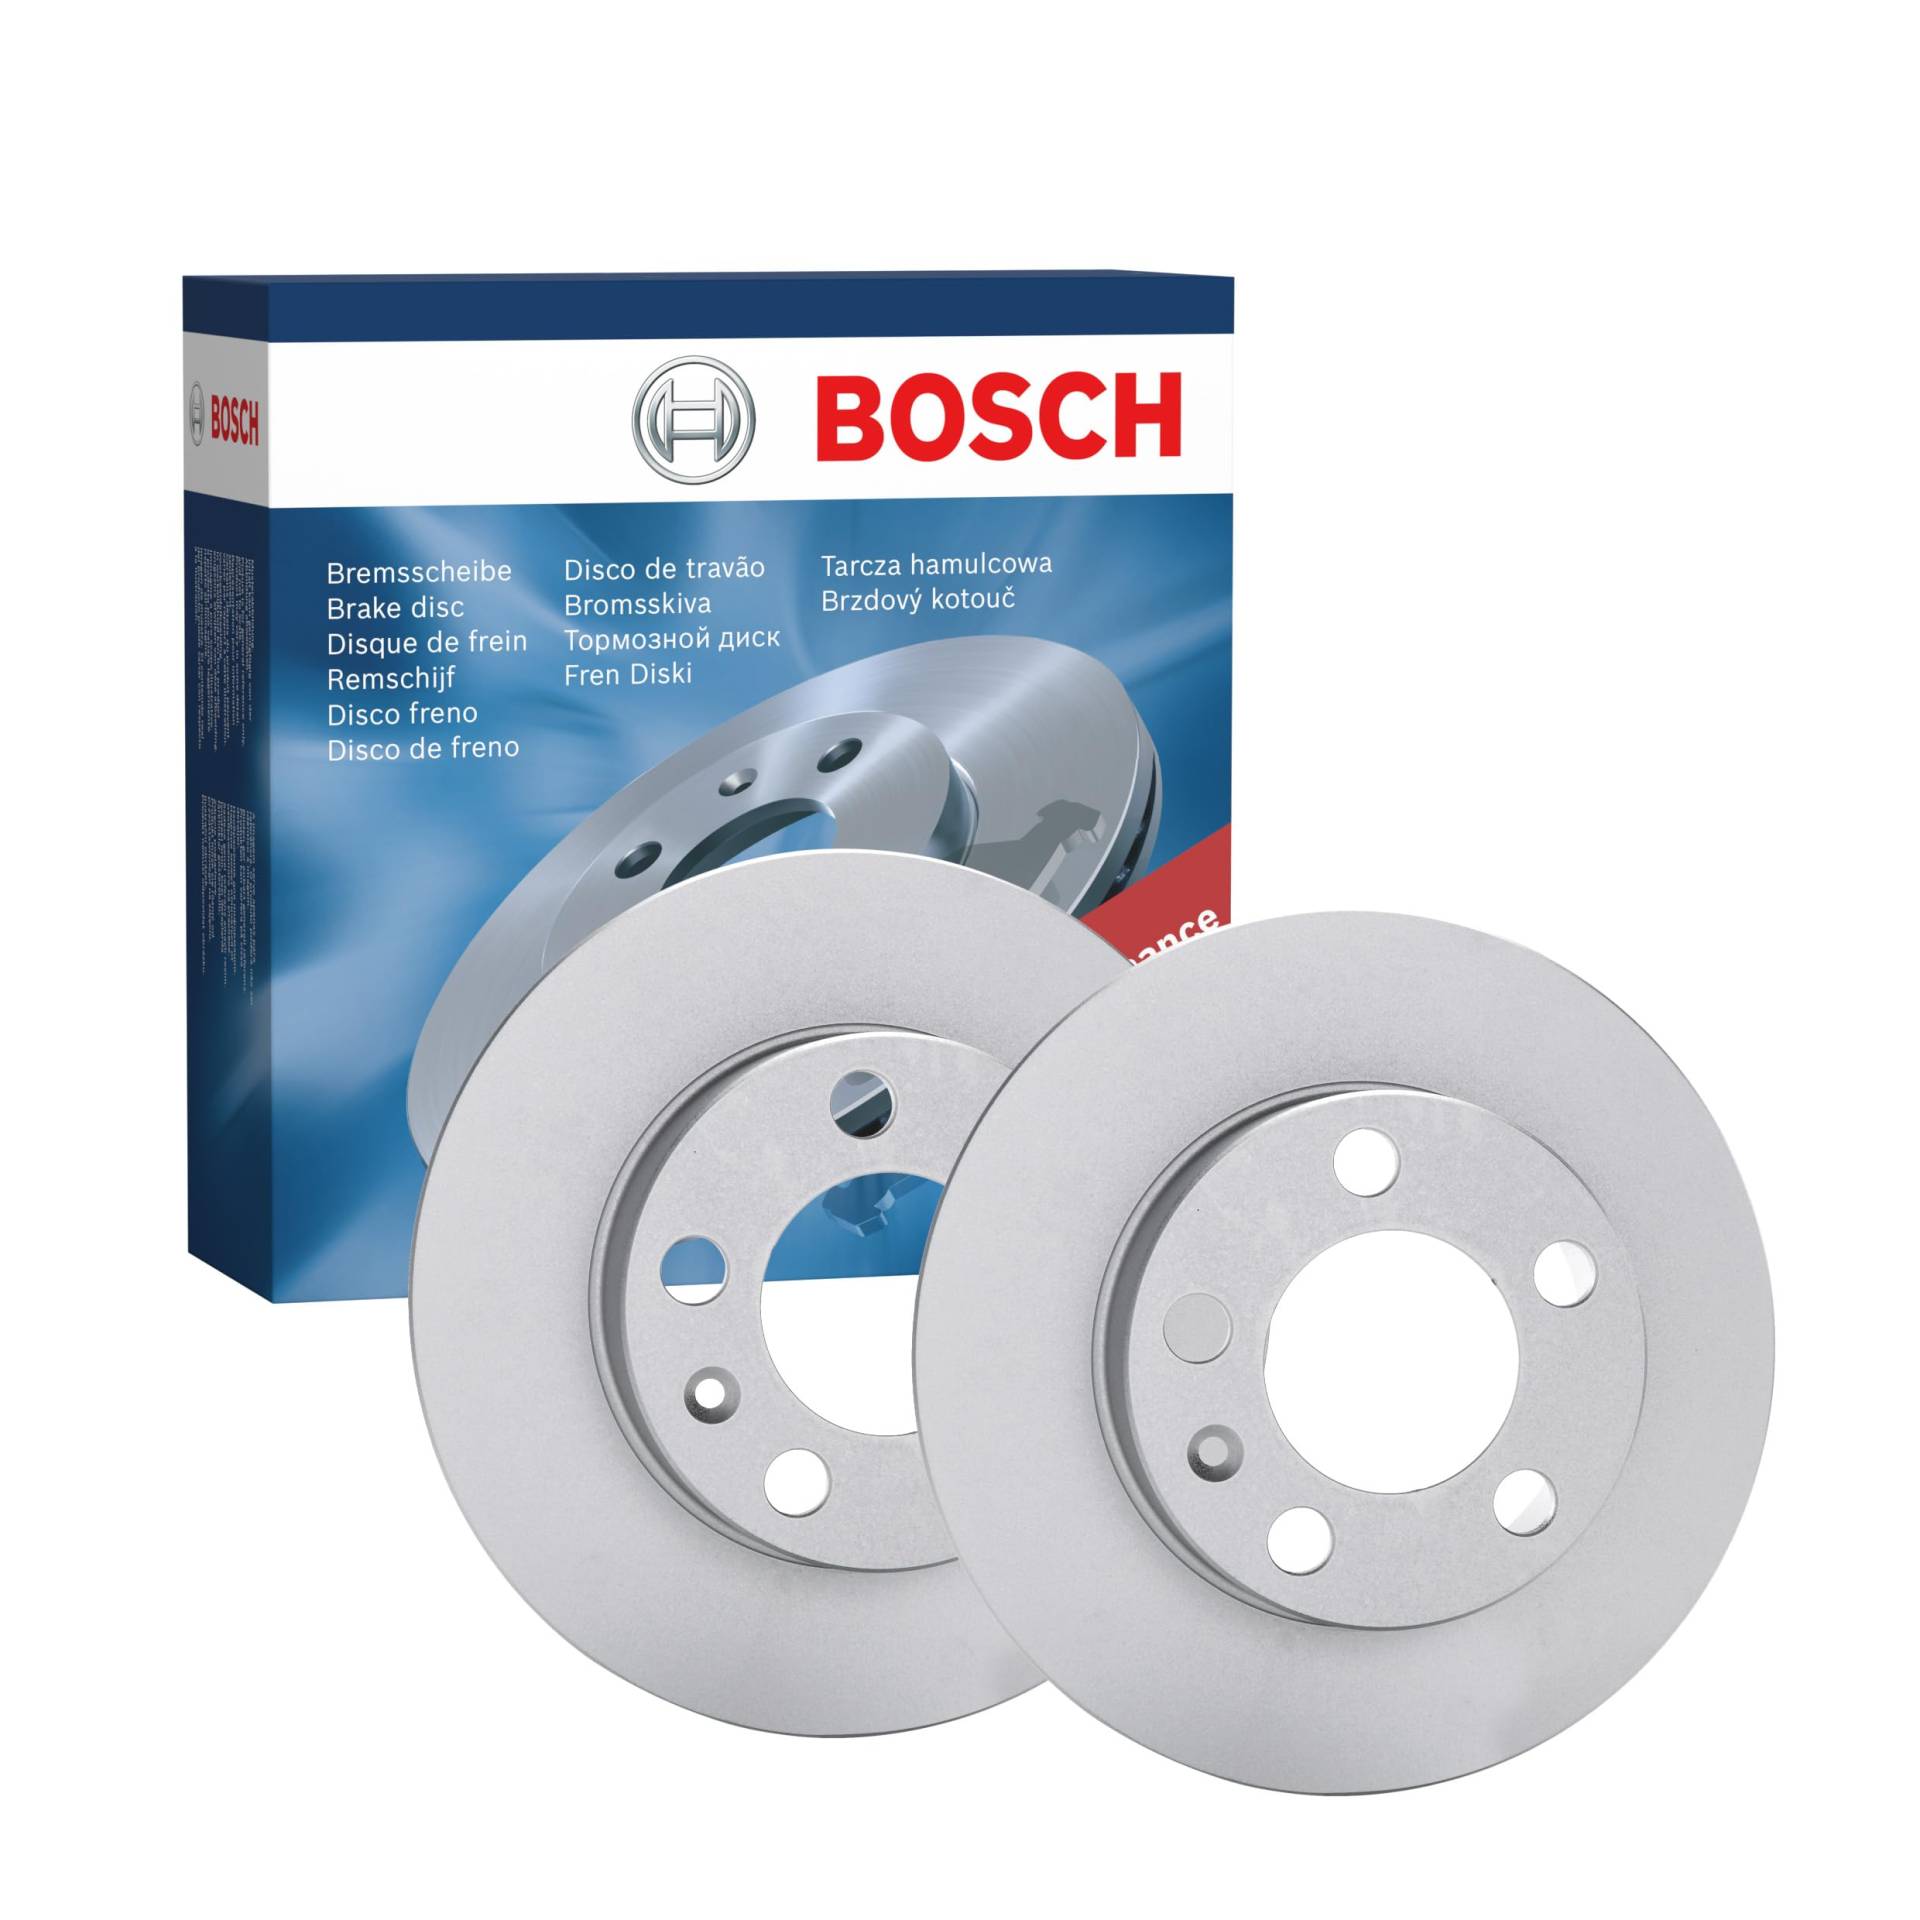 Bosch BD767 Bremsscheiben - Hinterachse - ECE-R90 Zertifizierung - zwei Bremsscheiben pro Set von Bosch Automotive